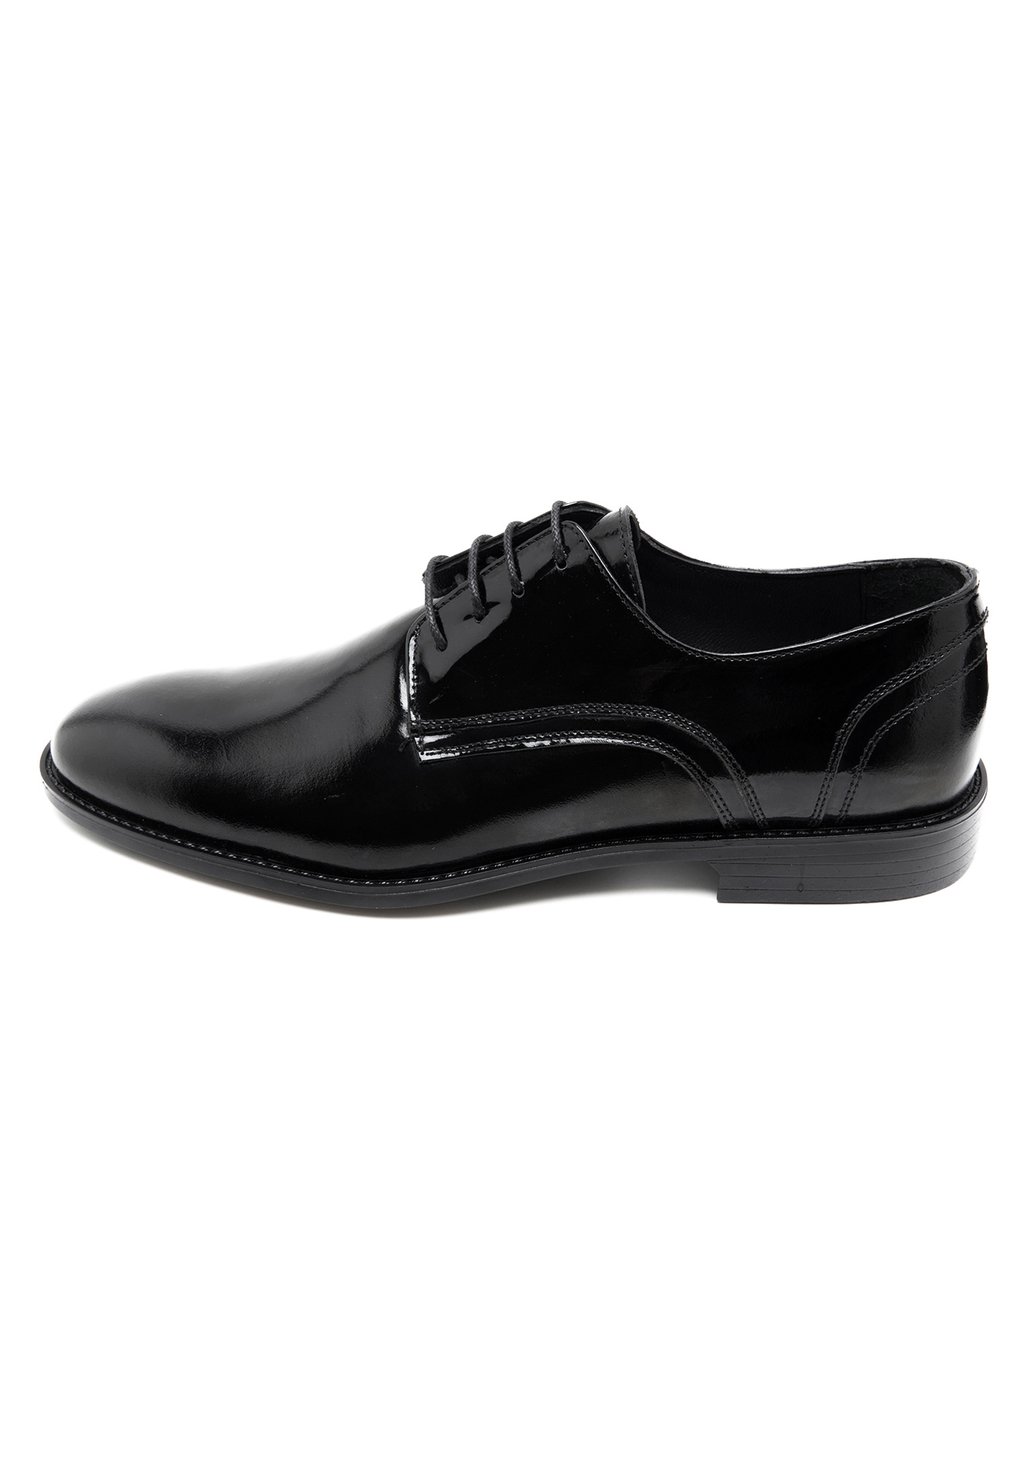 Деловые туфли на шнуровке Desa, цвет black спортивные туфли на шнуровке desa цвет mink